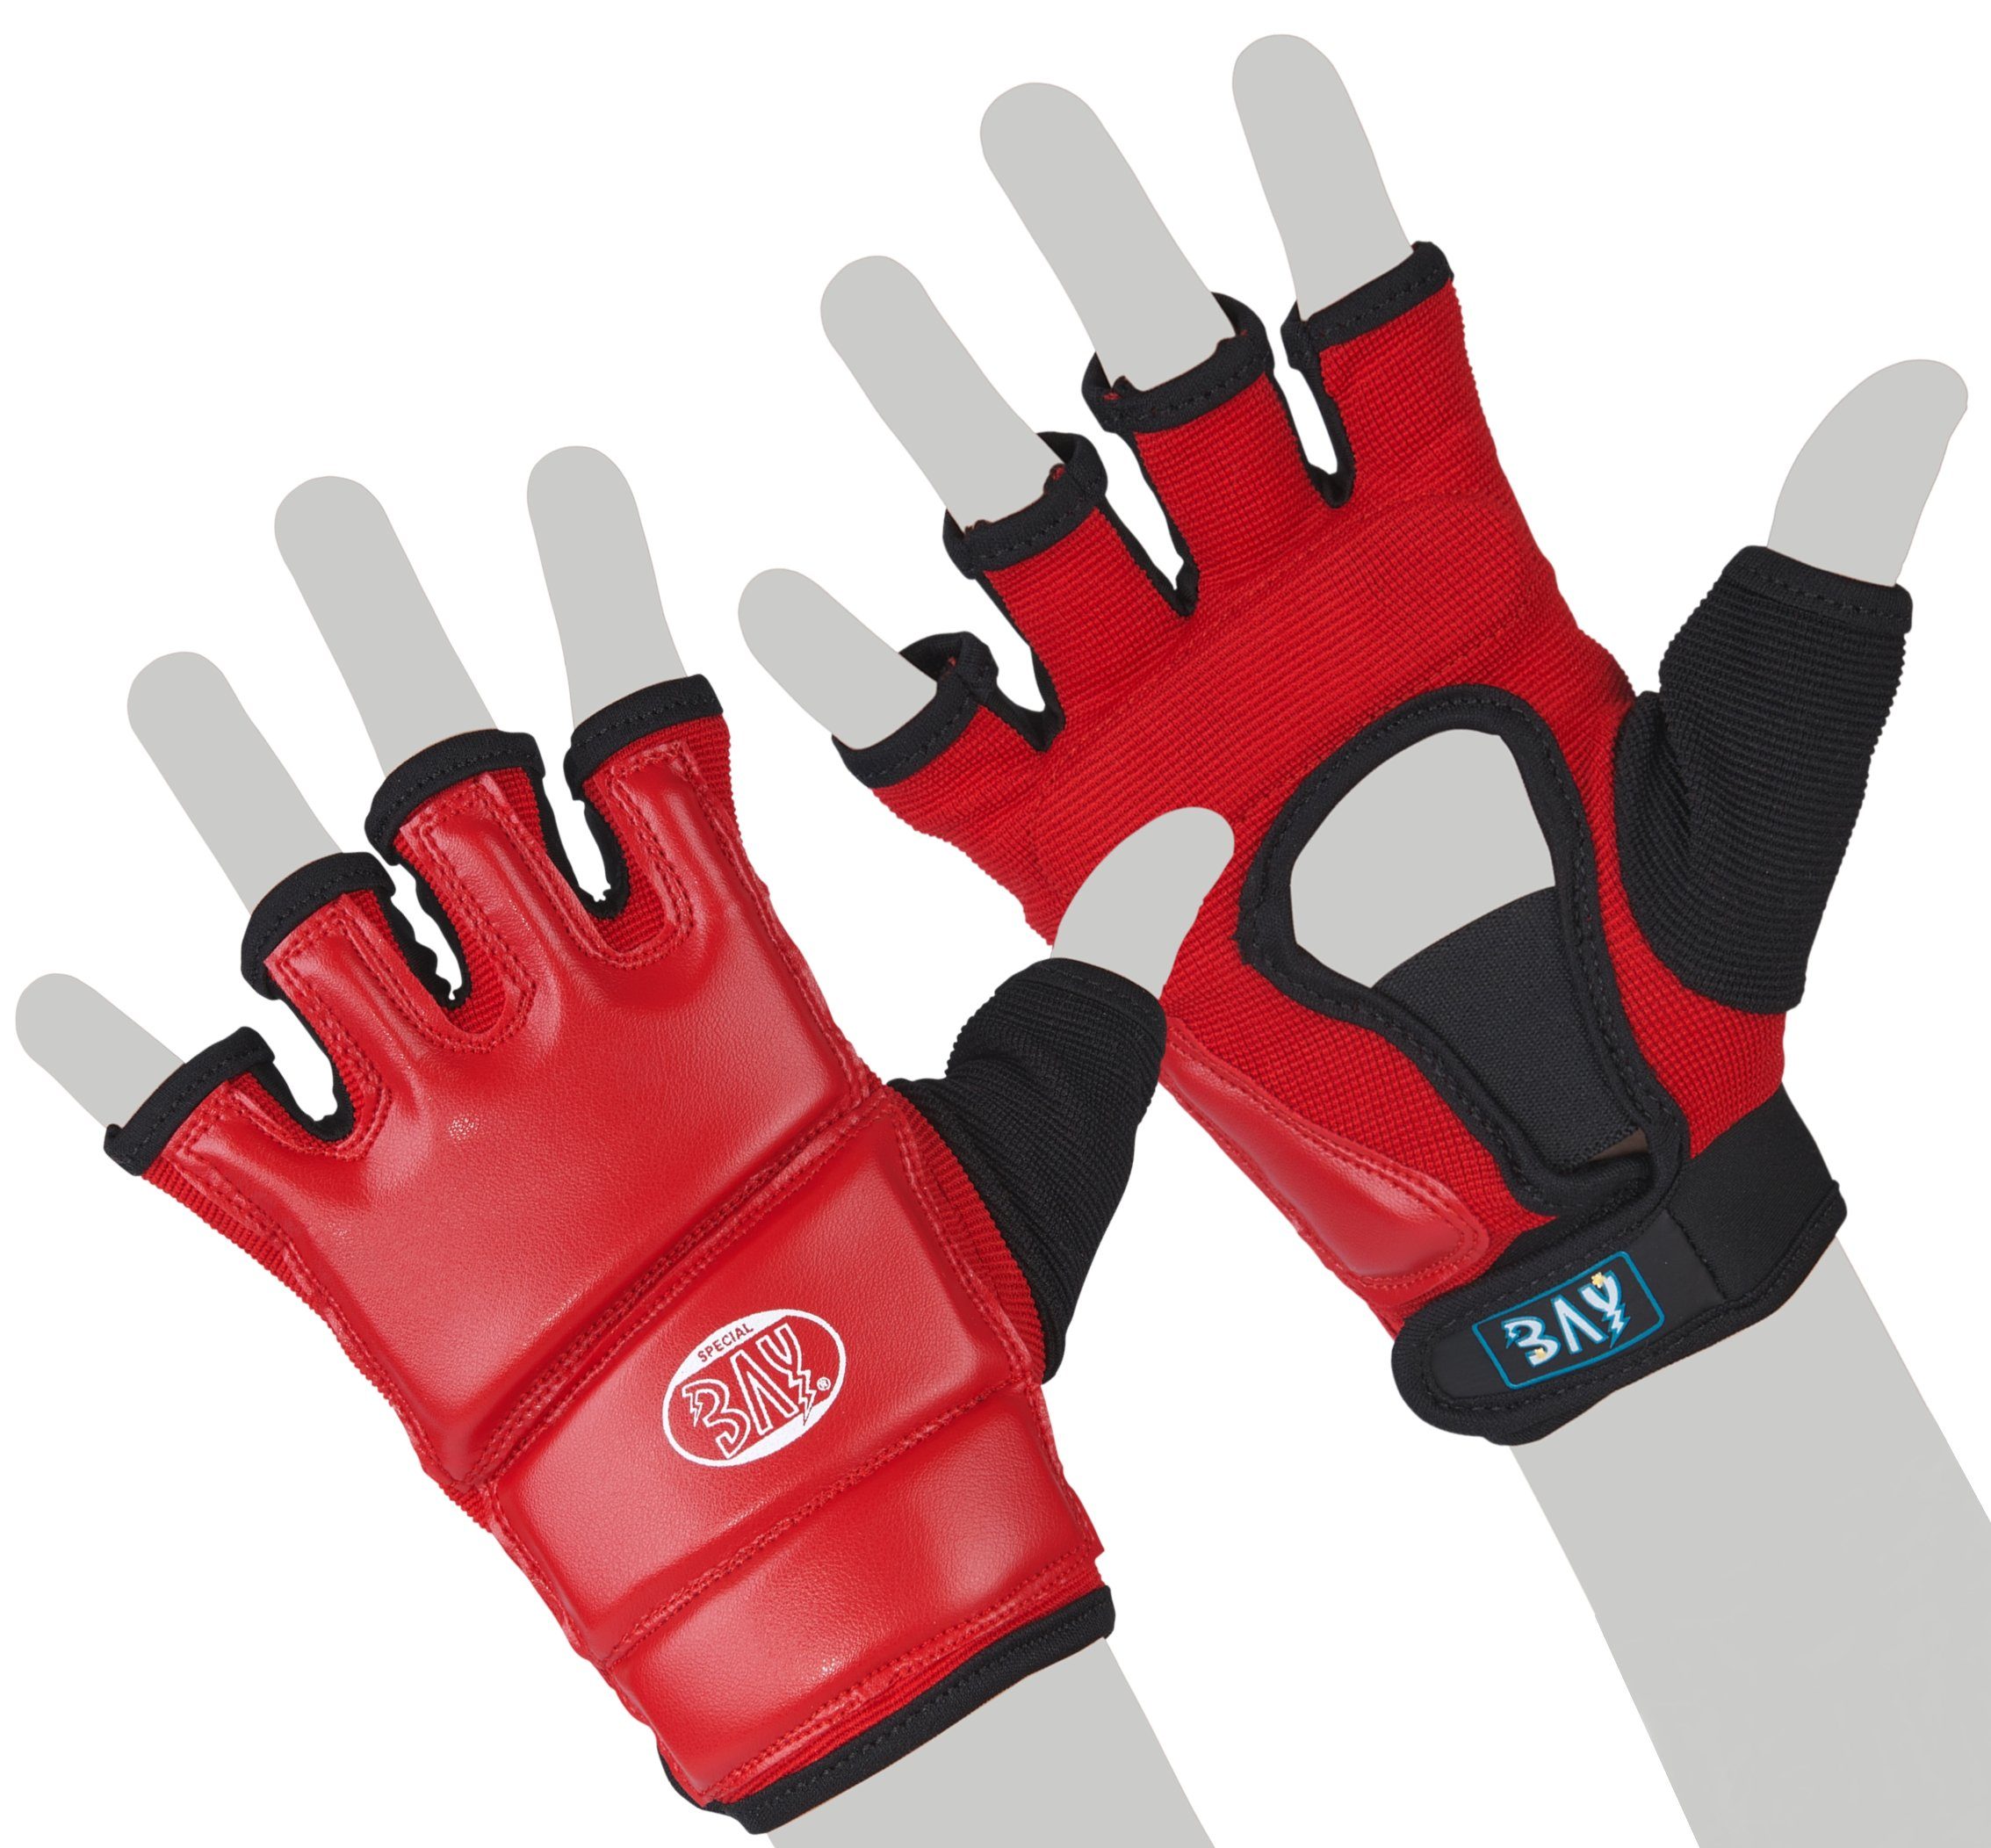 BAY-Sports Sandsackhandschuhe Touch Boxhandschuhe Sandsack Boxsack Handschutz rot, XS - XXL Erwachsene und Kinder